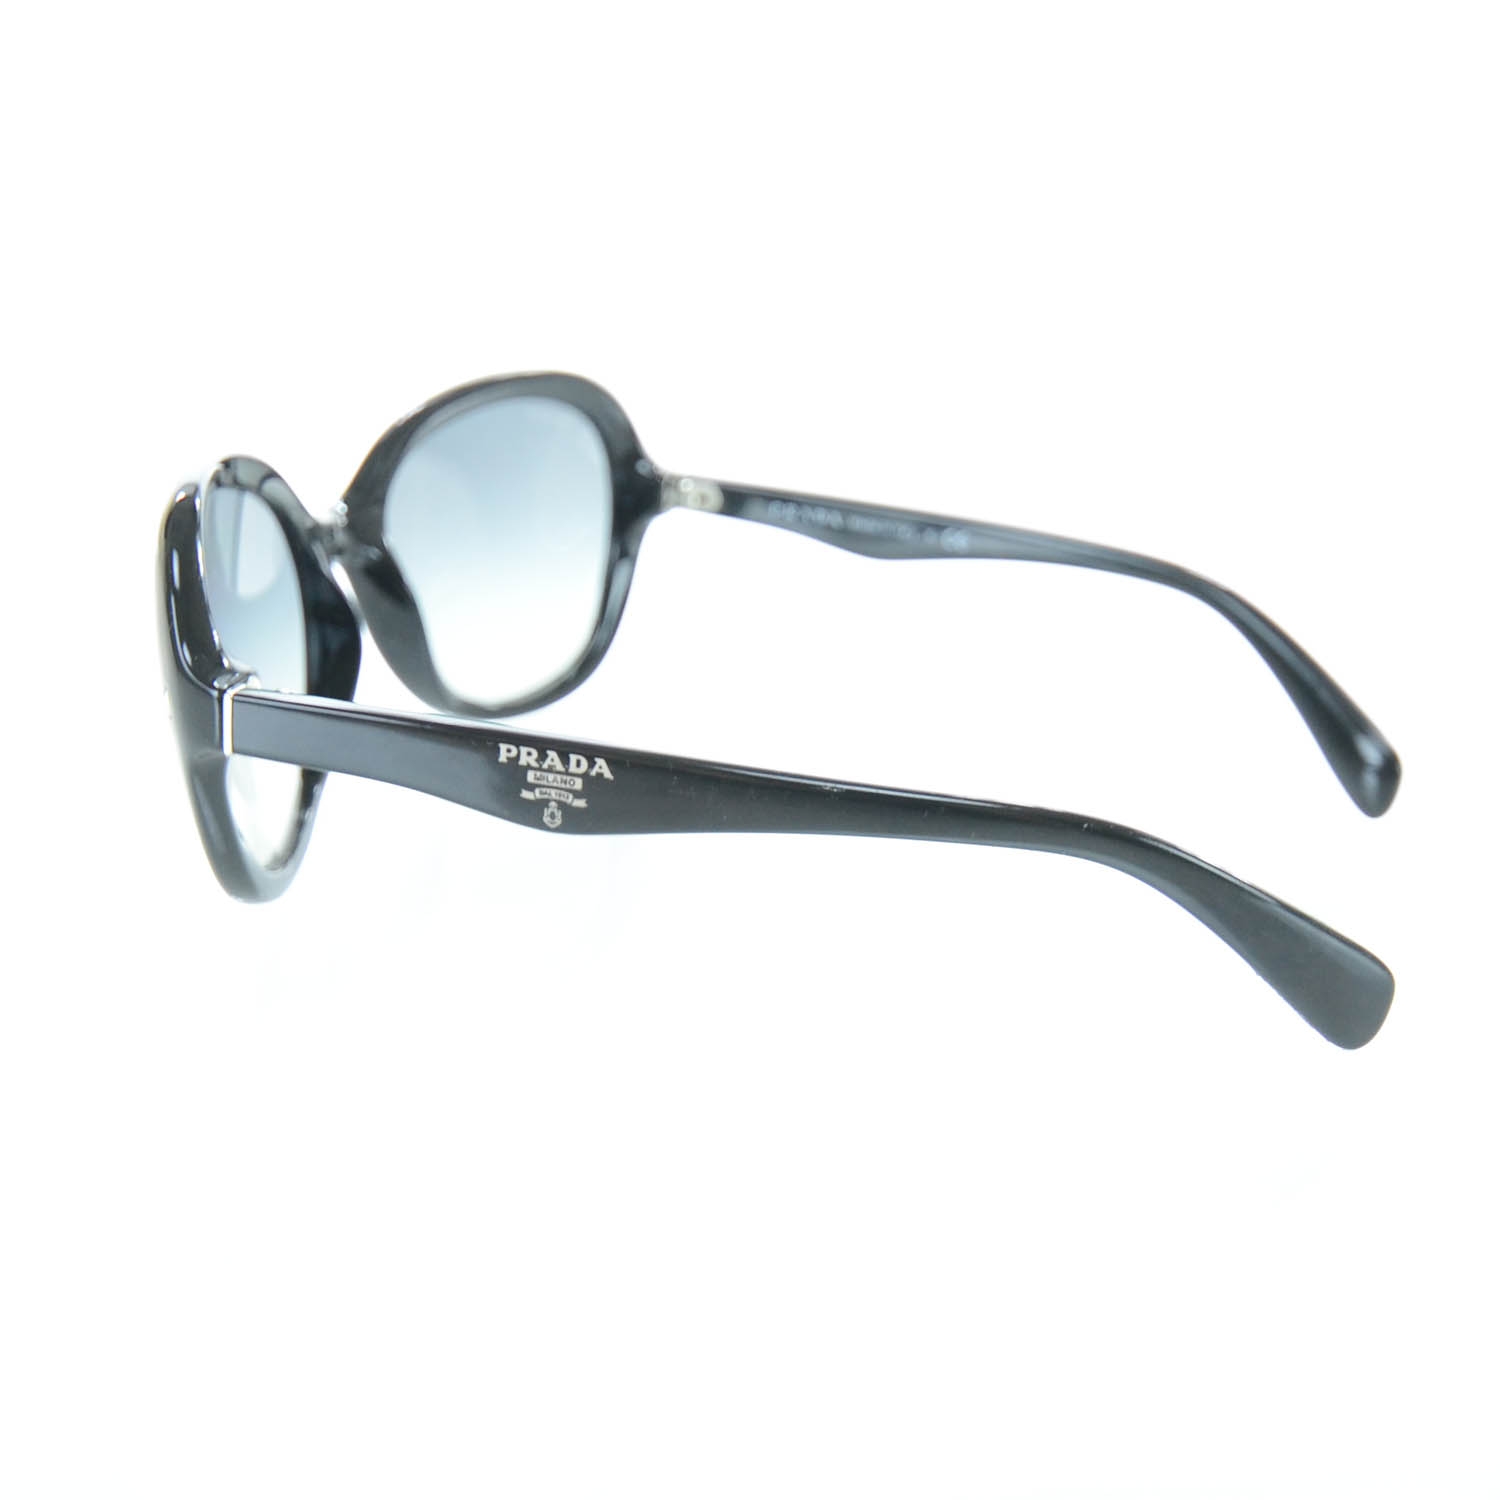 PRADA Logo Sunglasses SPR 09O Black 28433